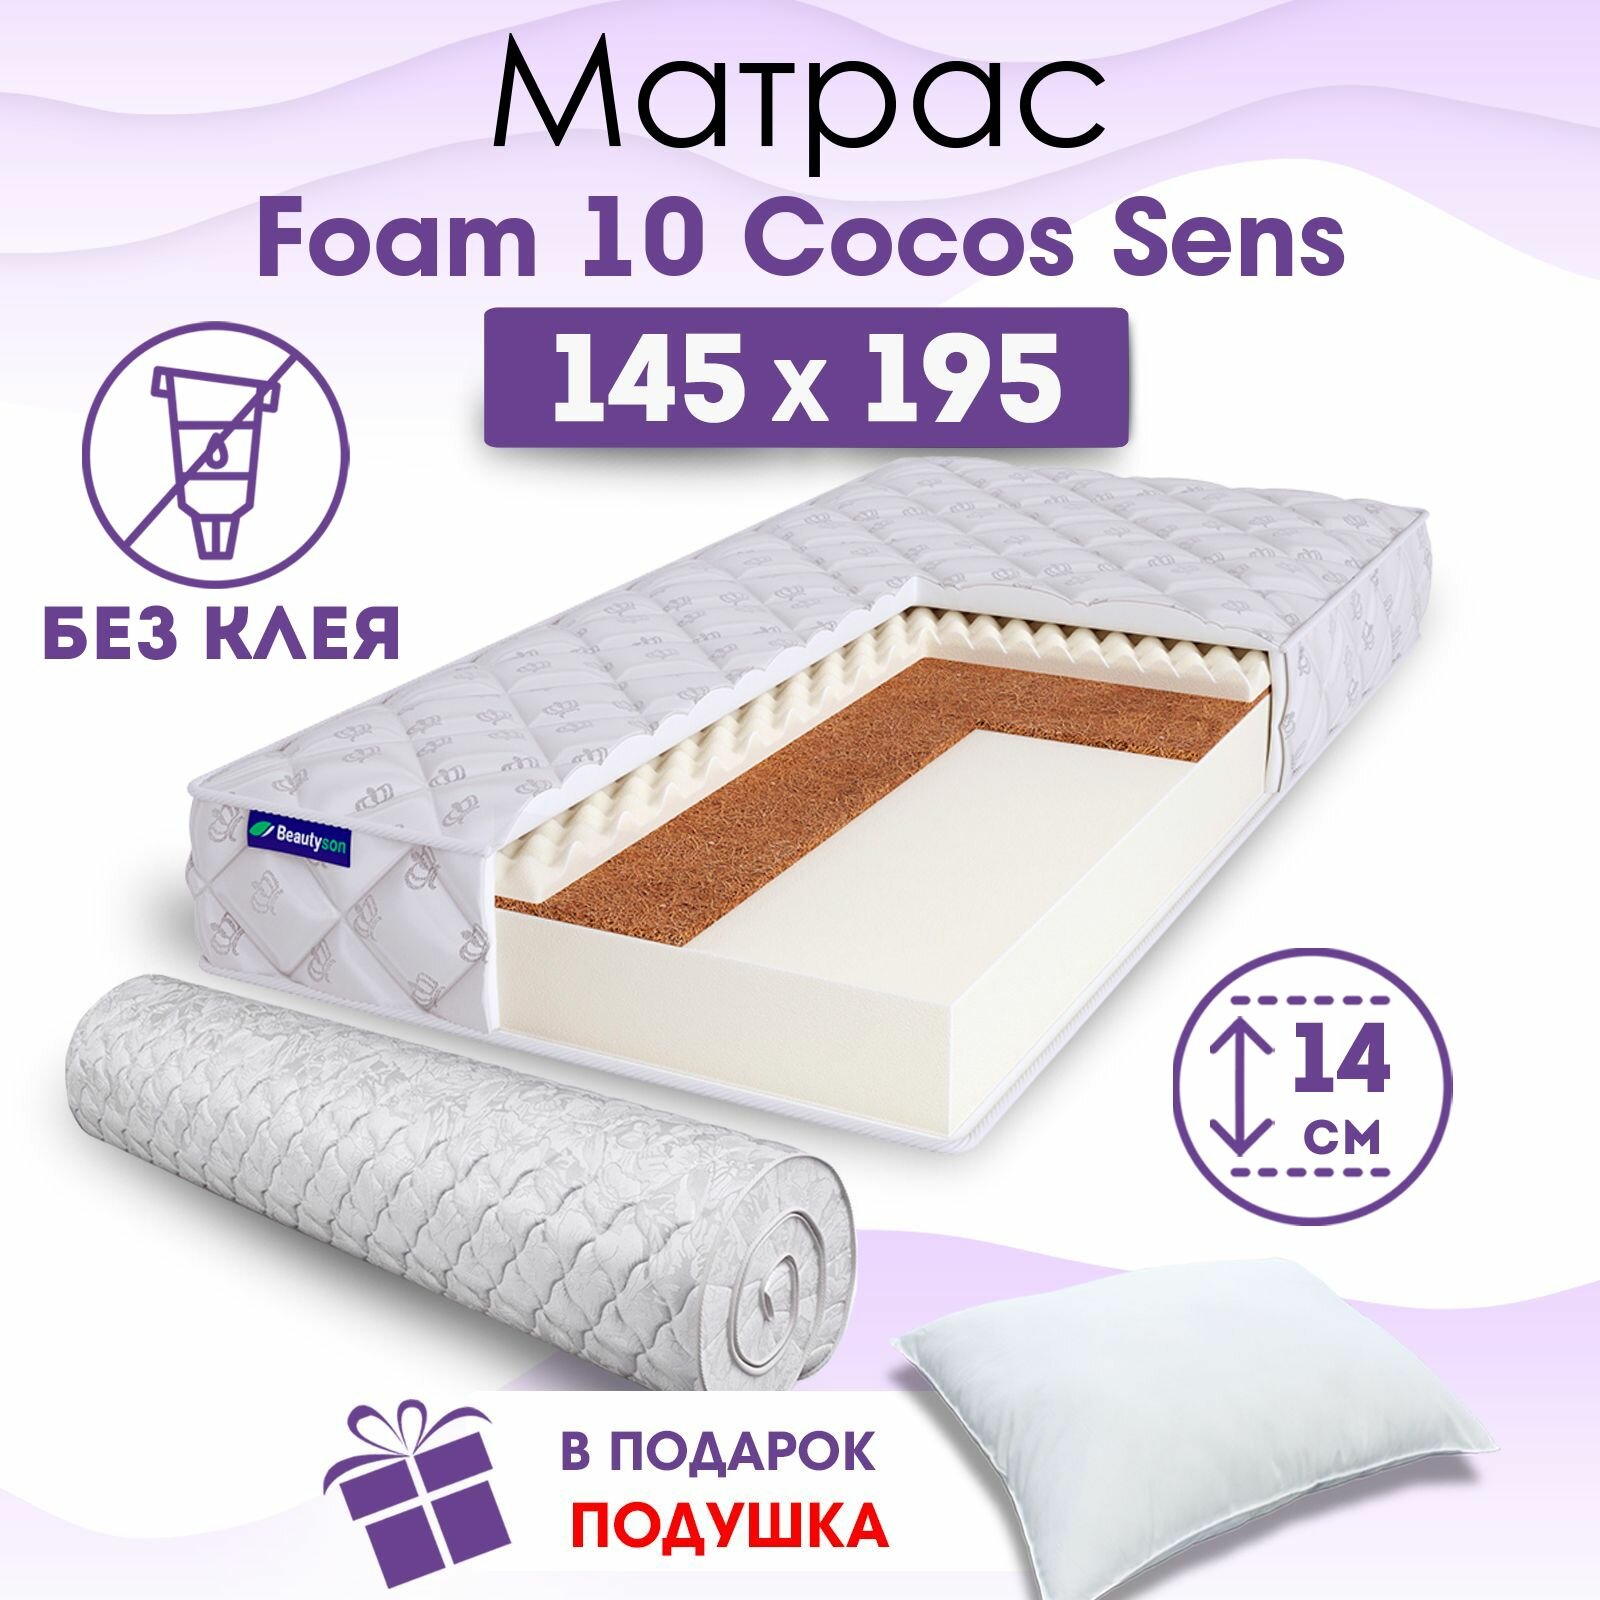 Ортопедический матрас Beautyson Foam 10 Cocos Sens без клея, 145х195, 14 см, беспружинный, двуспальный, на кровать, для дивана, умеренно мягкий